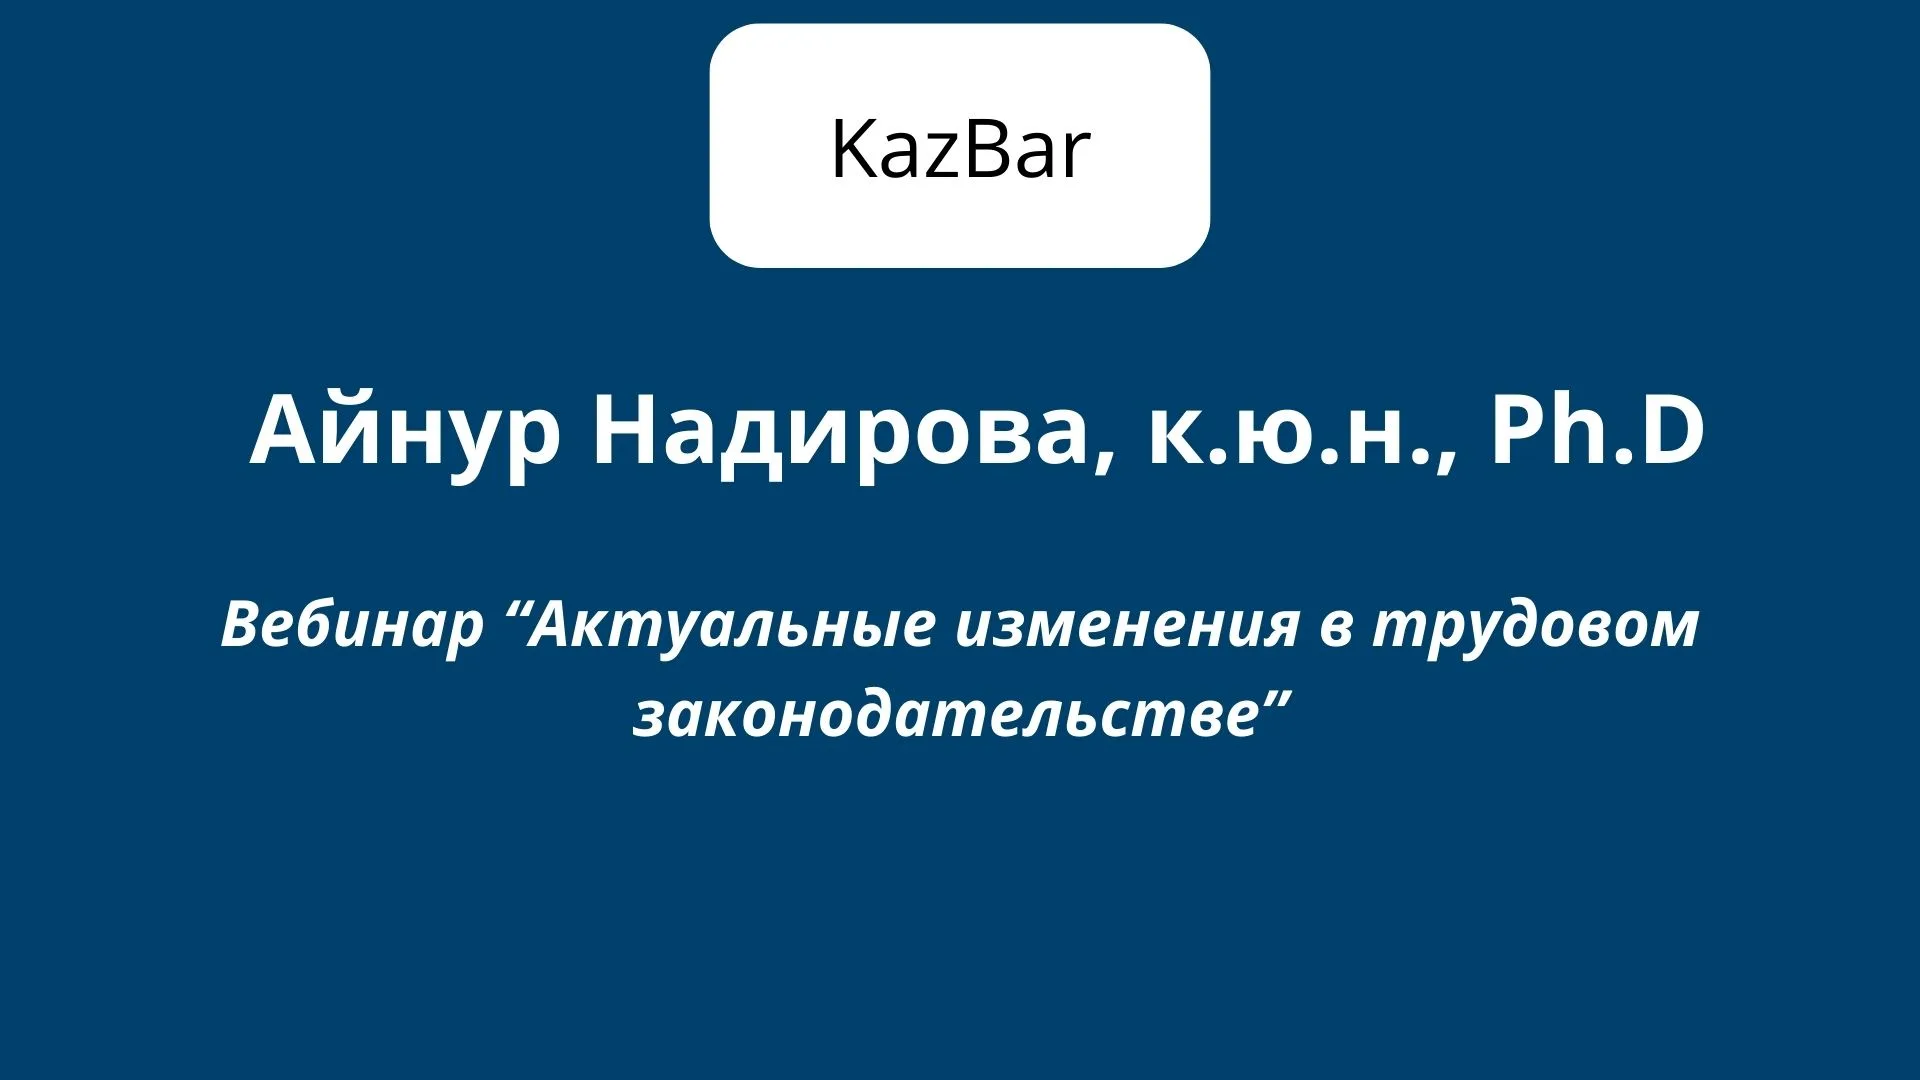 Вы сейчас просматриваете В трудовом кодексе Казахстана много спорных моментов